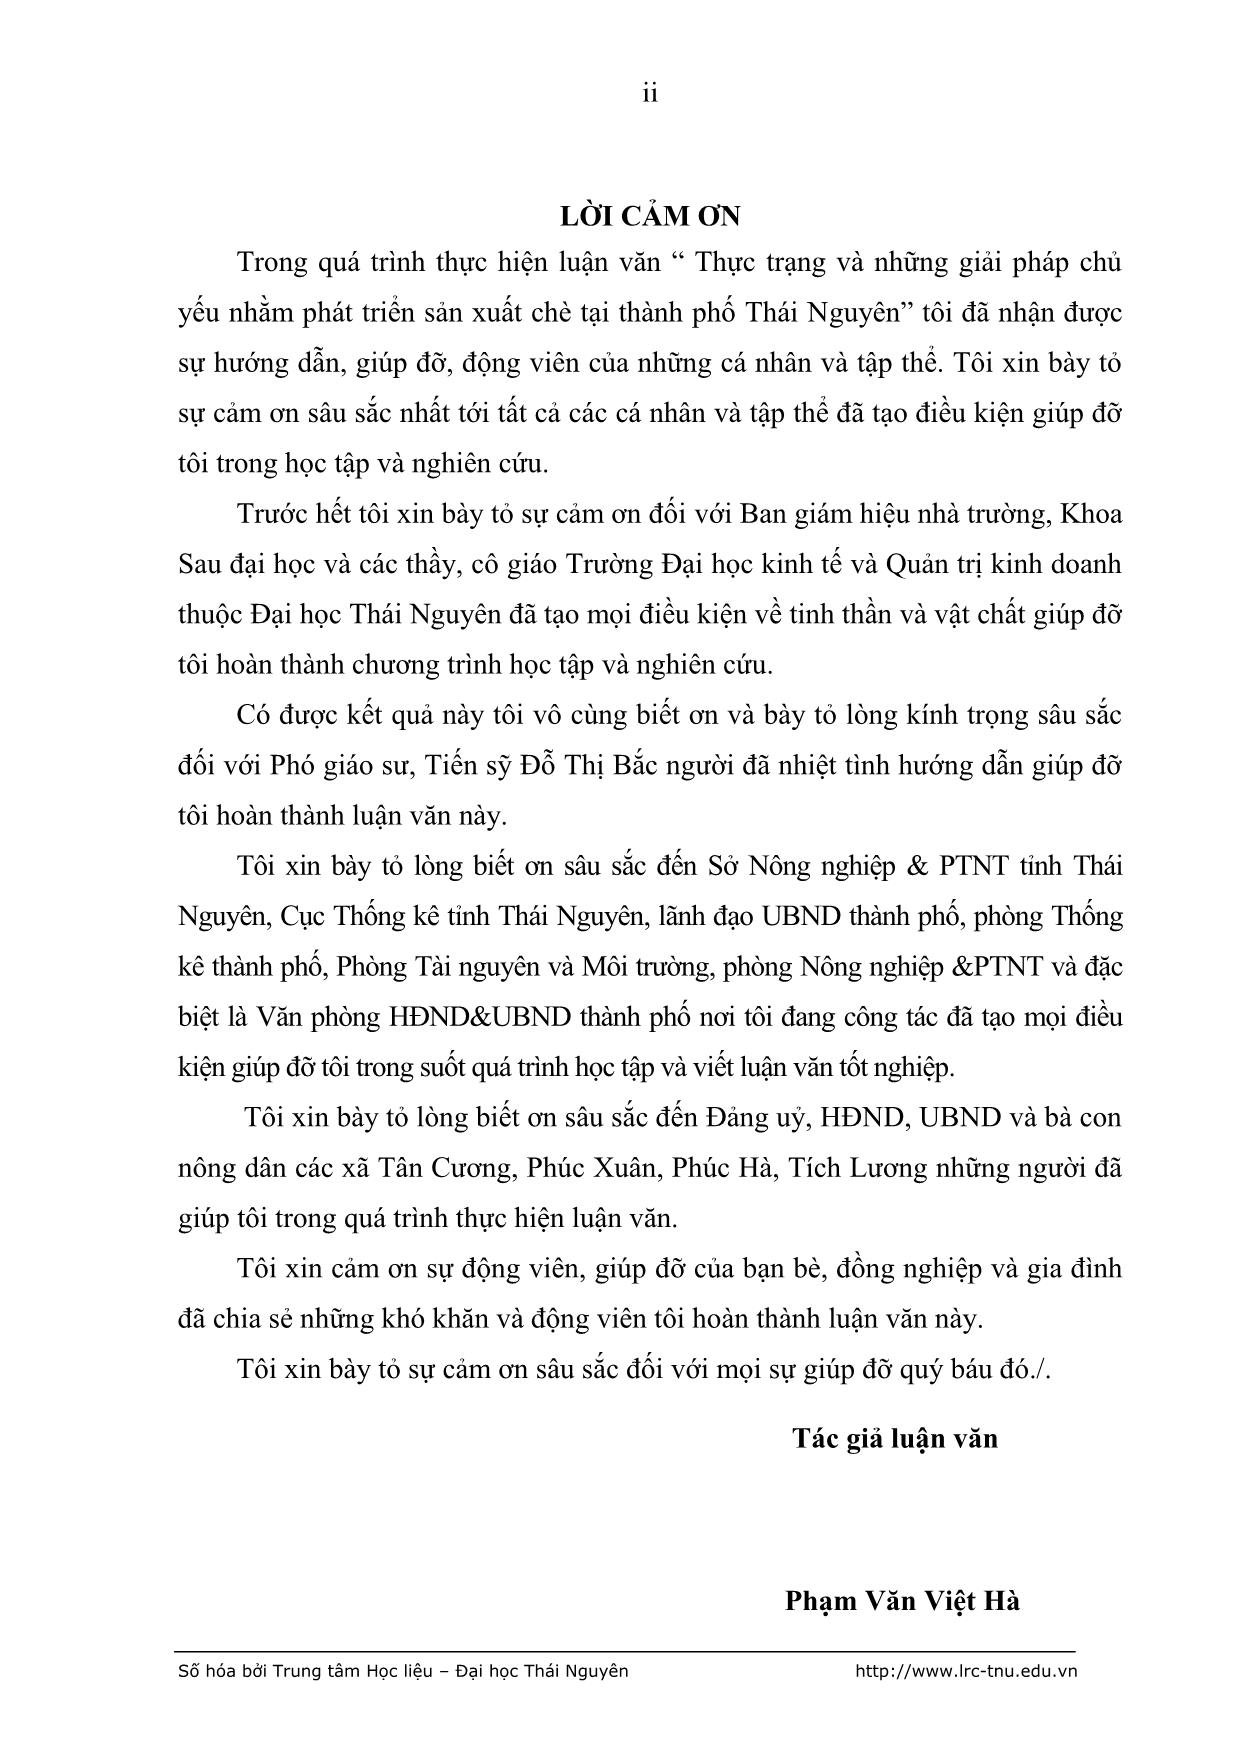 Luận văn Thực trạng và những giải pháp chủ yếu nhằm phát triển sản xuất chè tại Thành phố Thái Nguyên trang 3